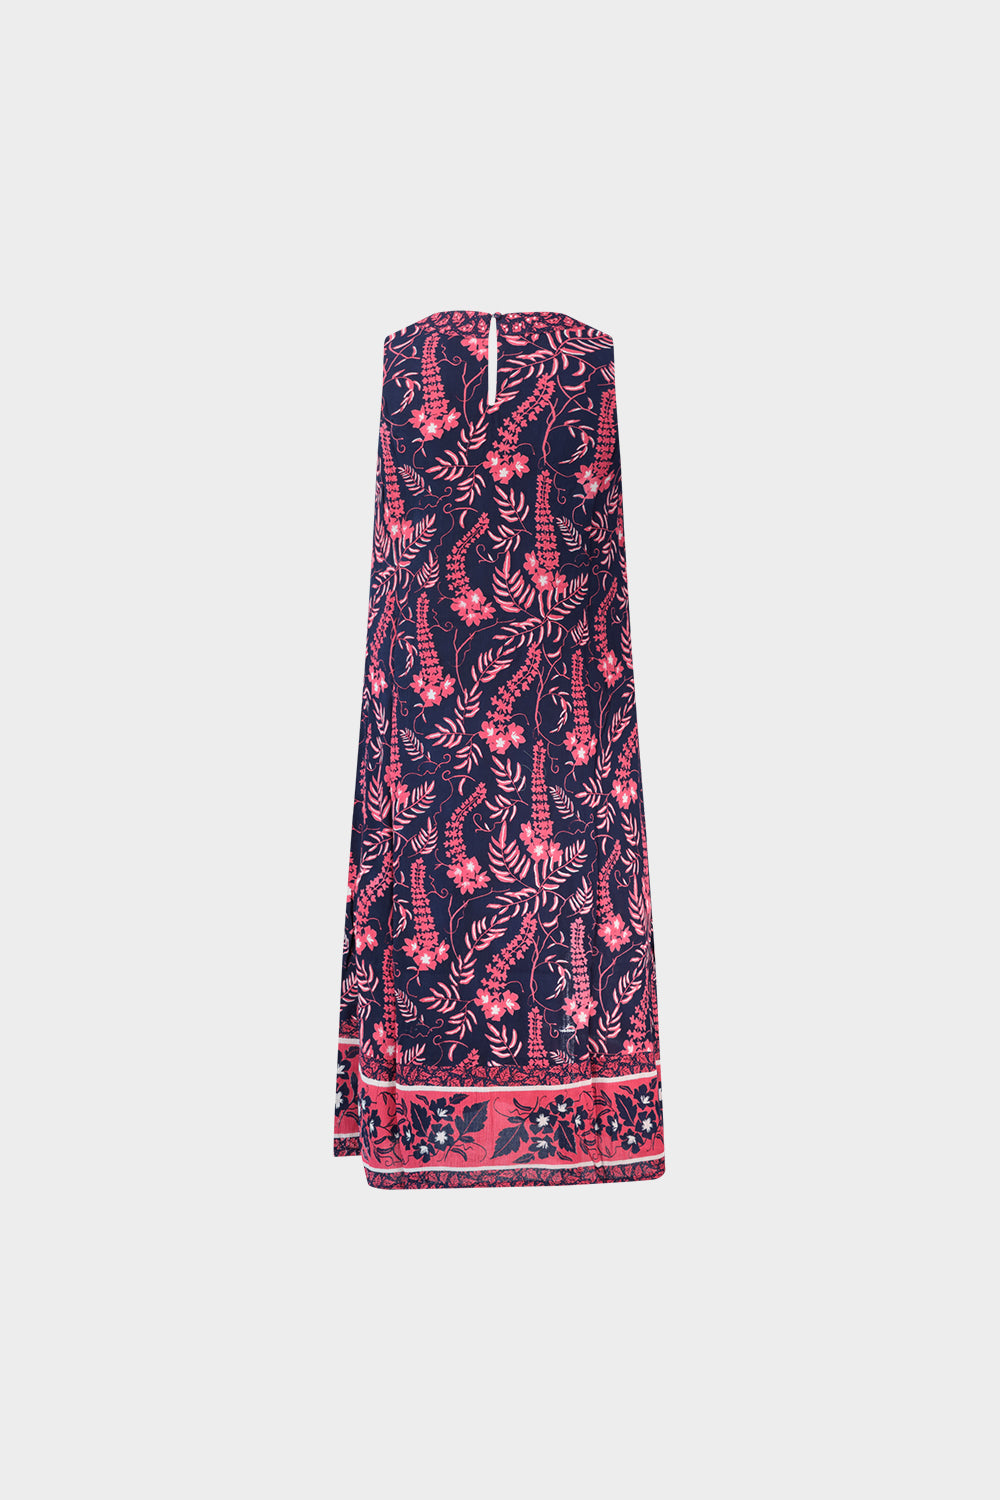 שמלה קצרה לנשים הדפס פרחים RENE DERHY Vendome online | ונדום .